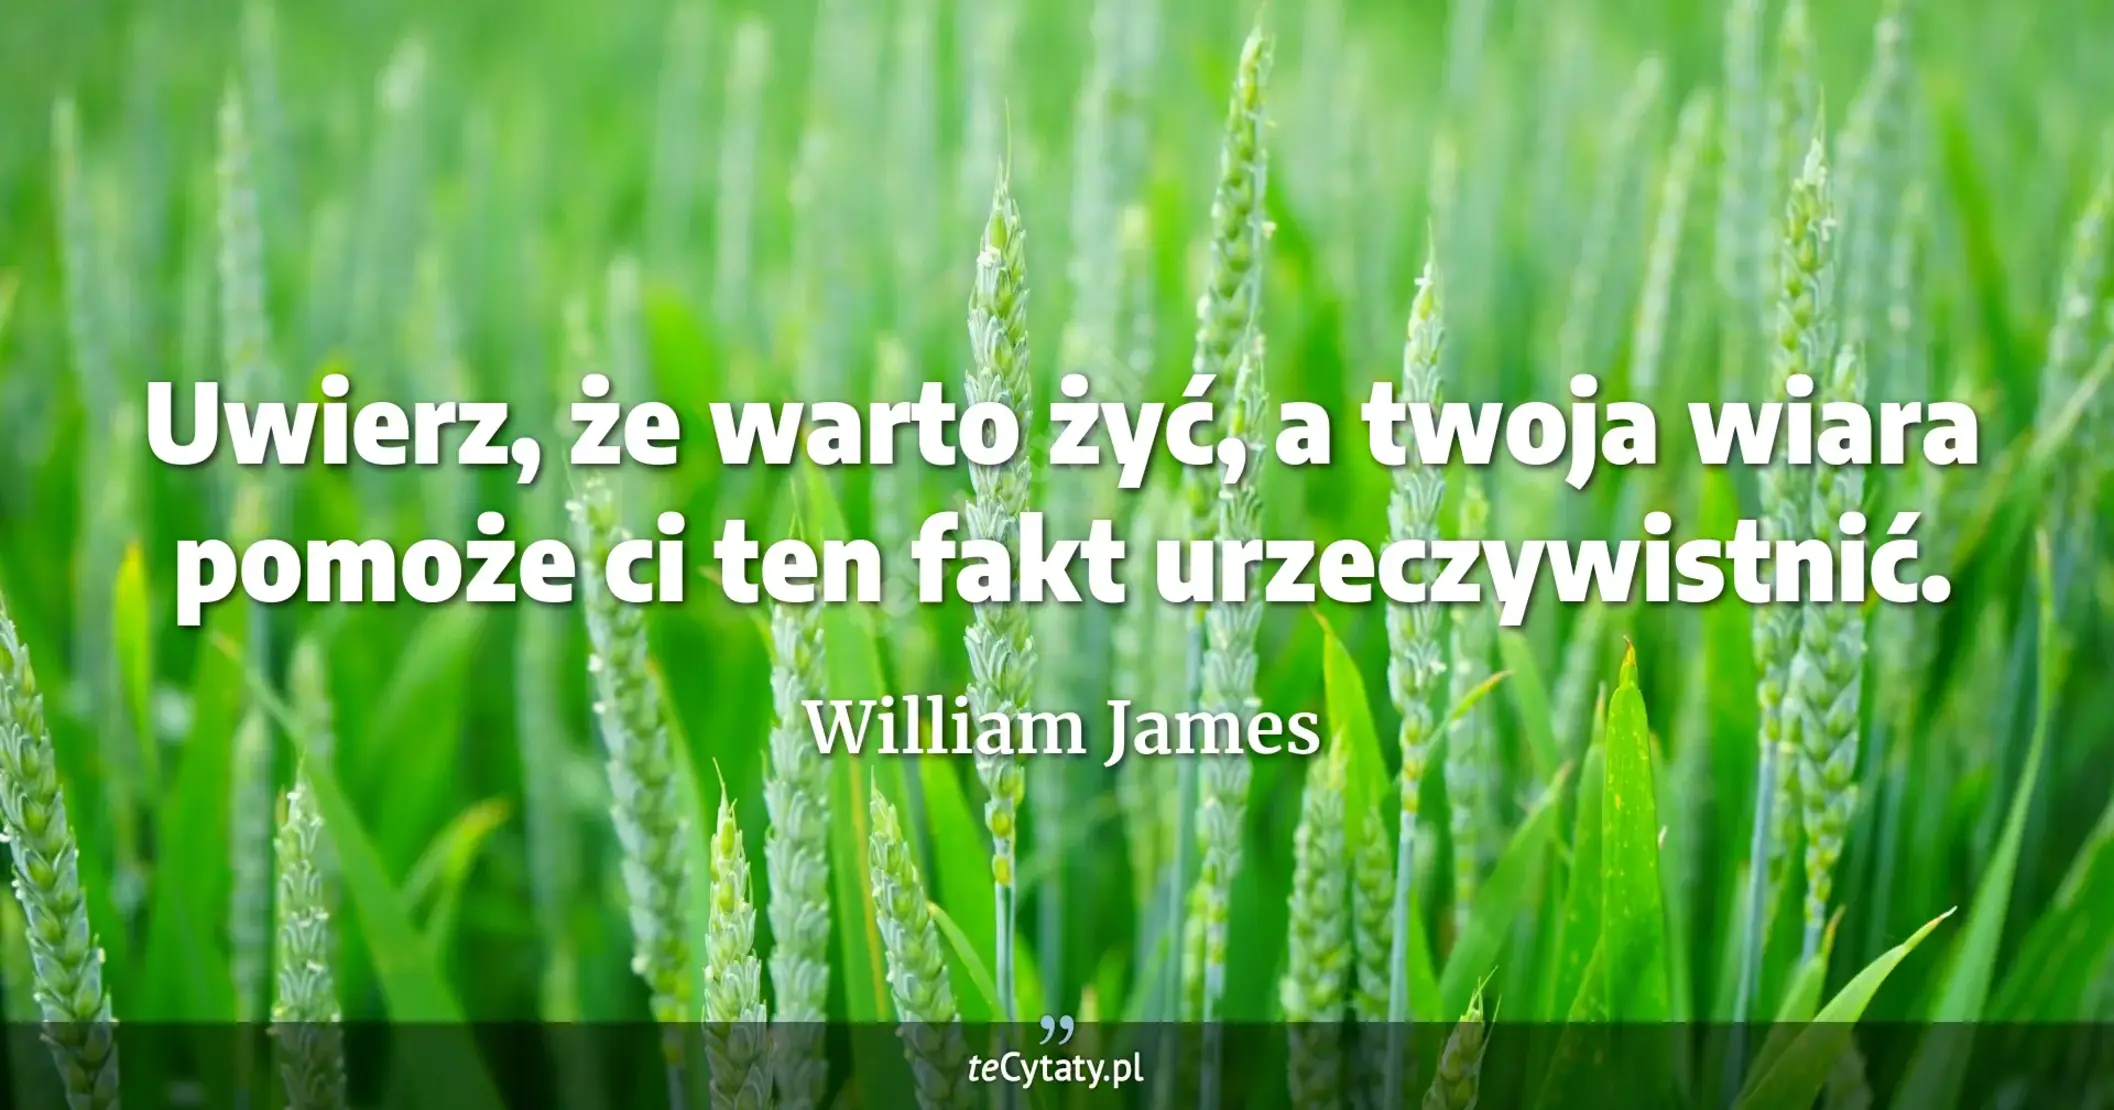 Uwierz, że warto żyć, a twoja wiara pomoże ci ten fakt urzeczywistnić. - William James